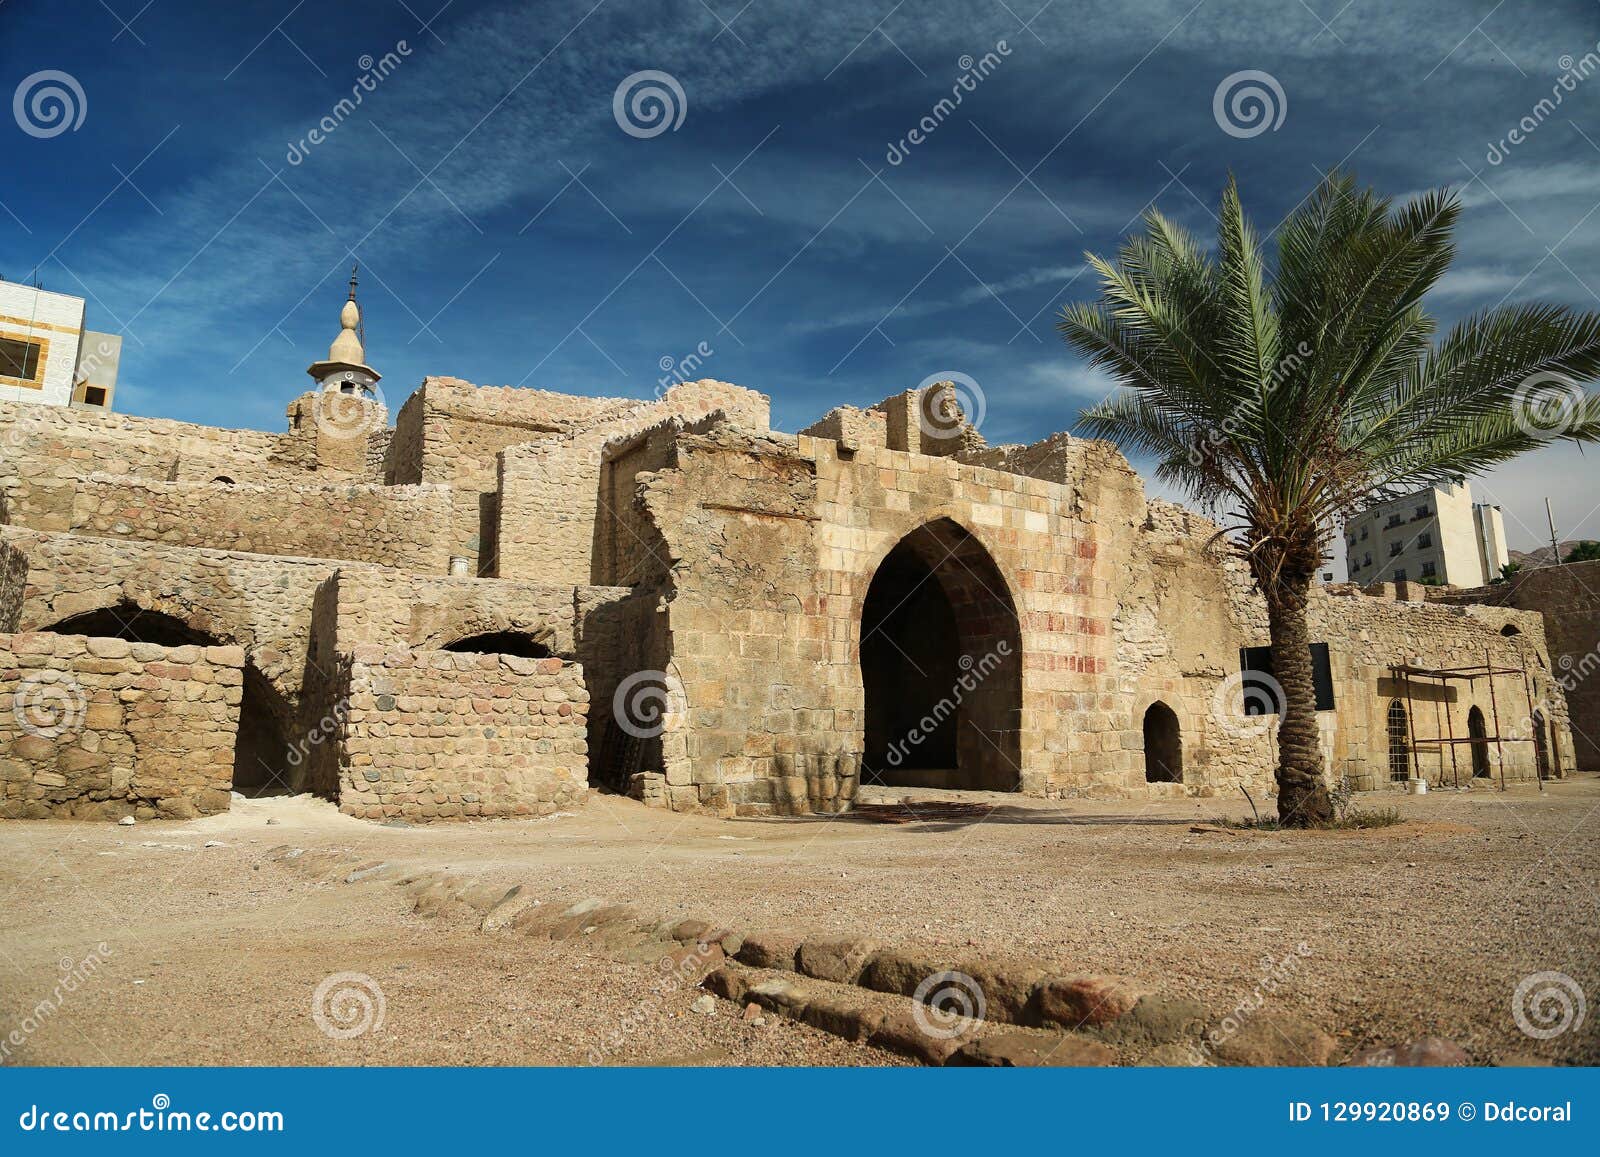 aqaba castle, mamluk castle or aqaba fort, jordan